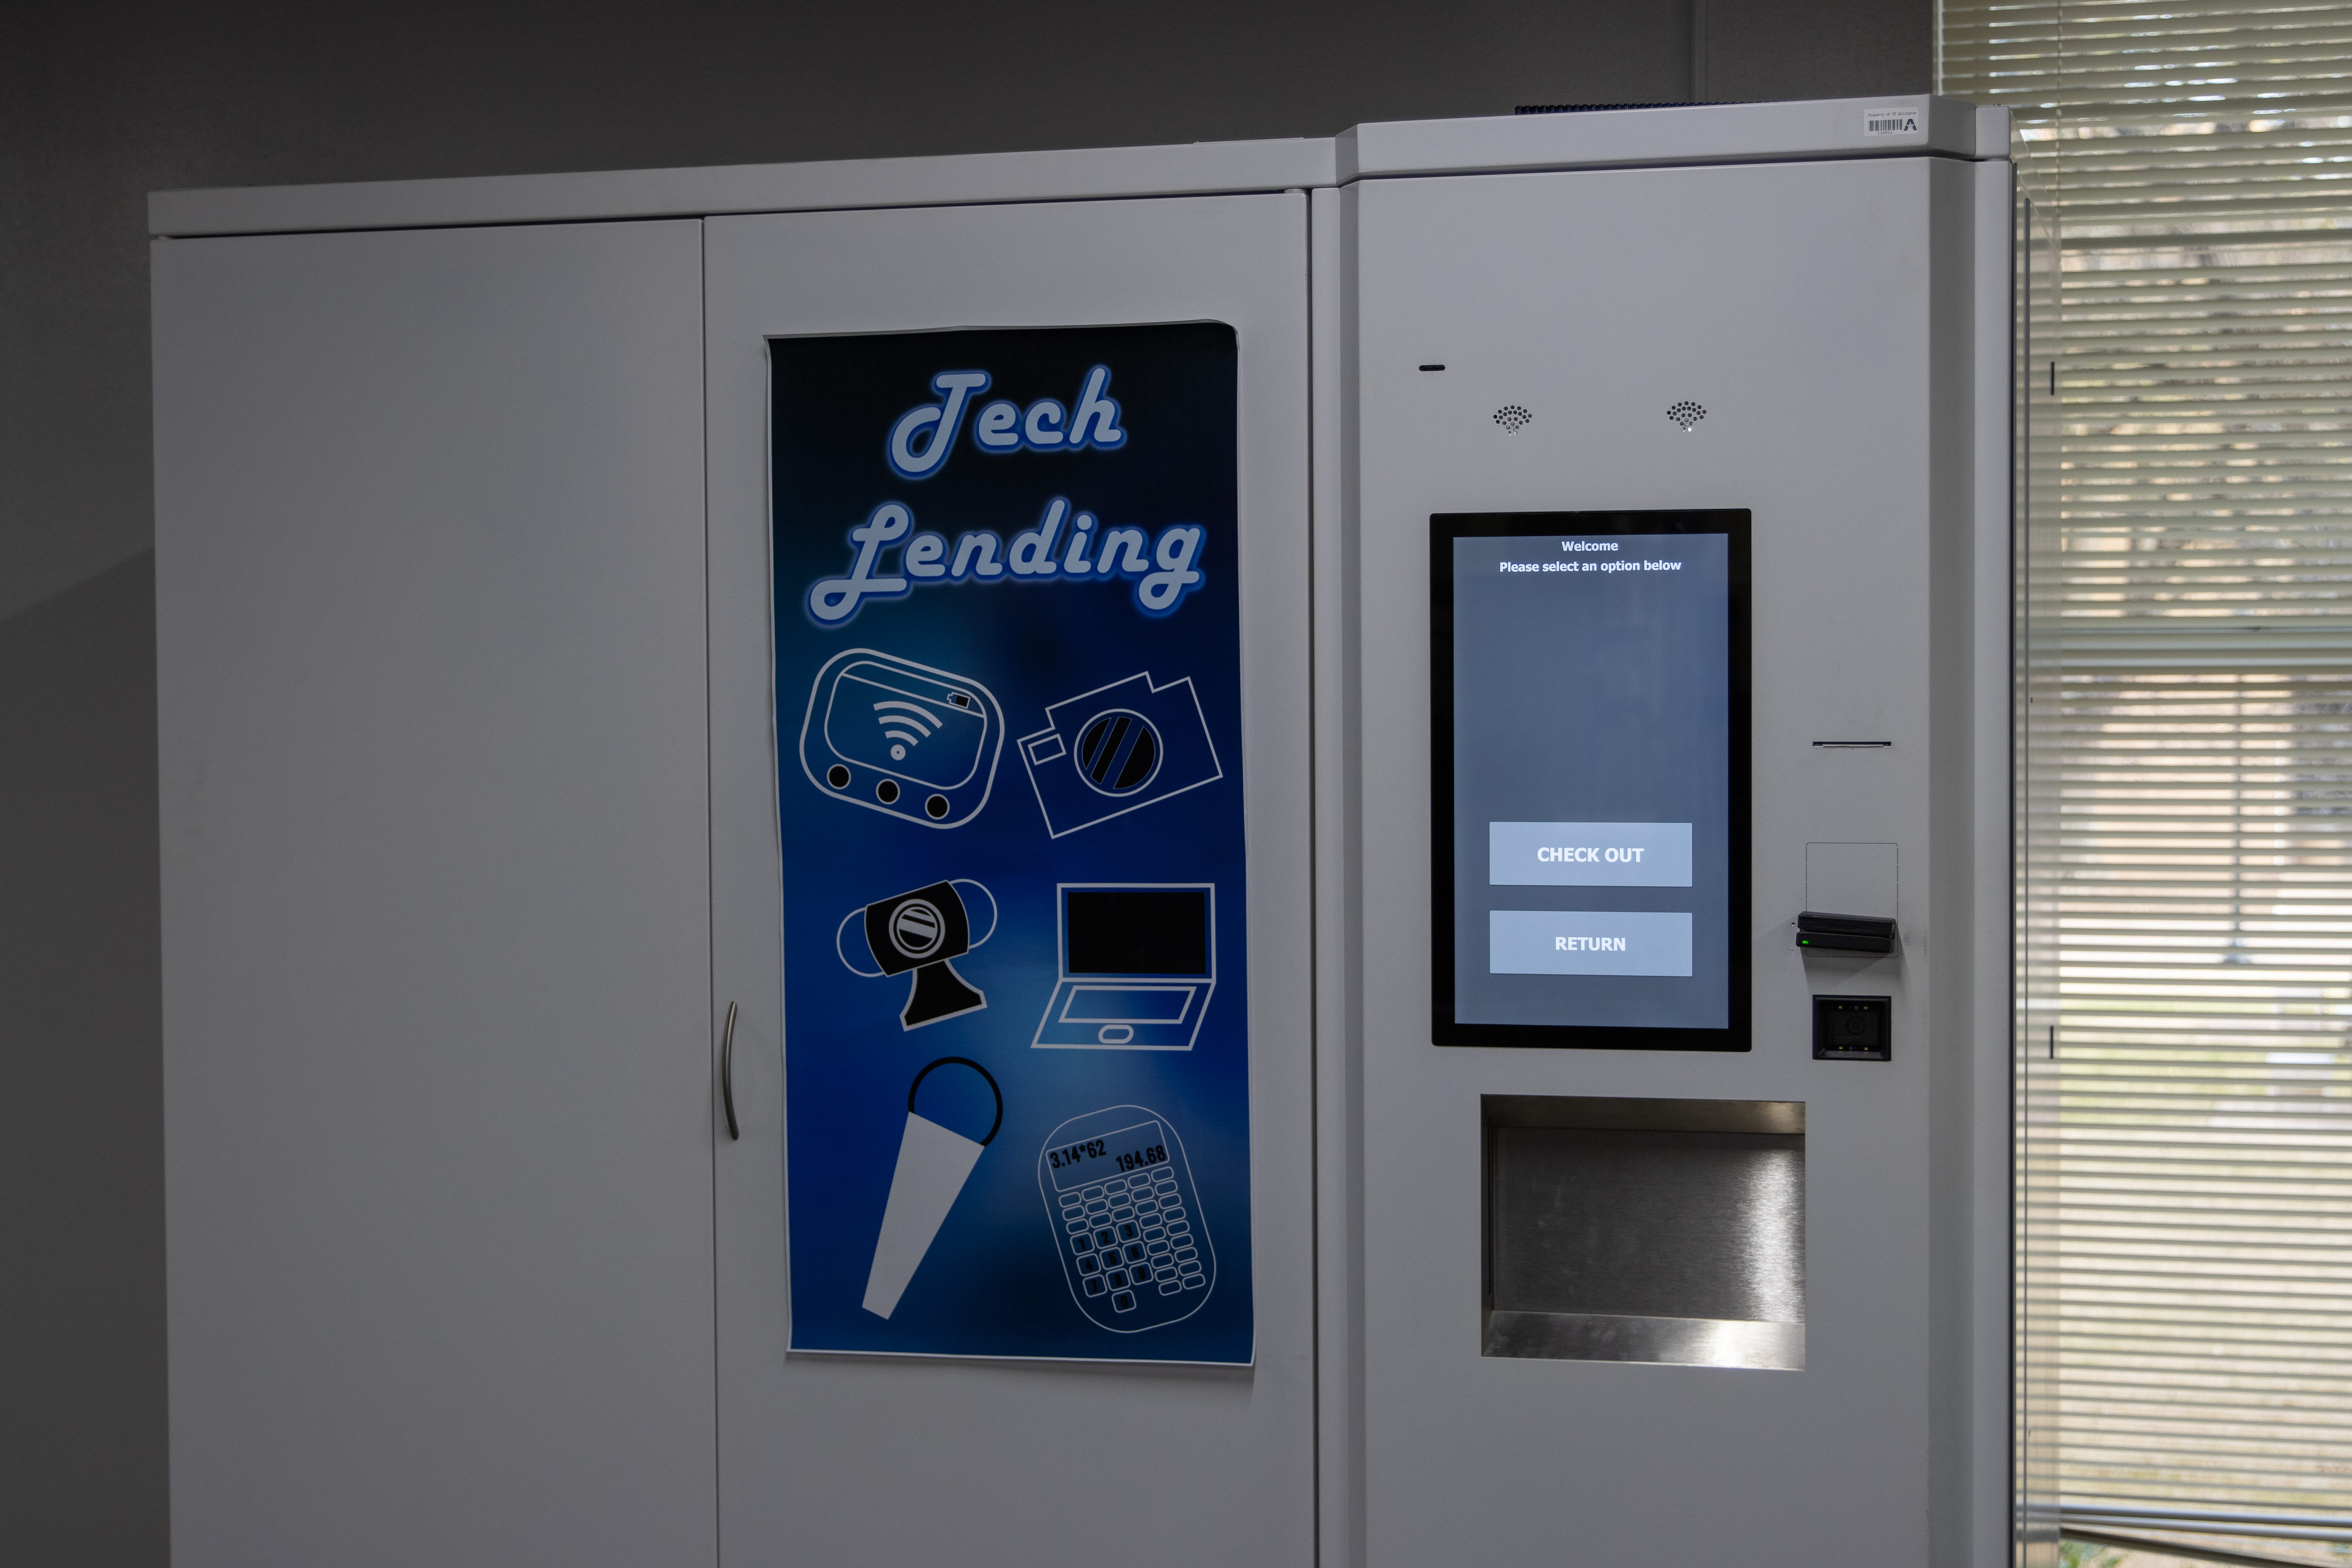 Tech lending kiosk at the Library